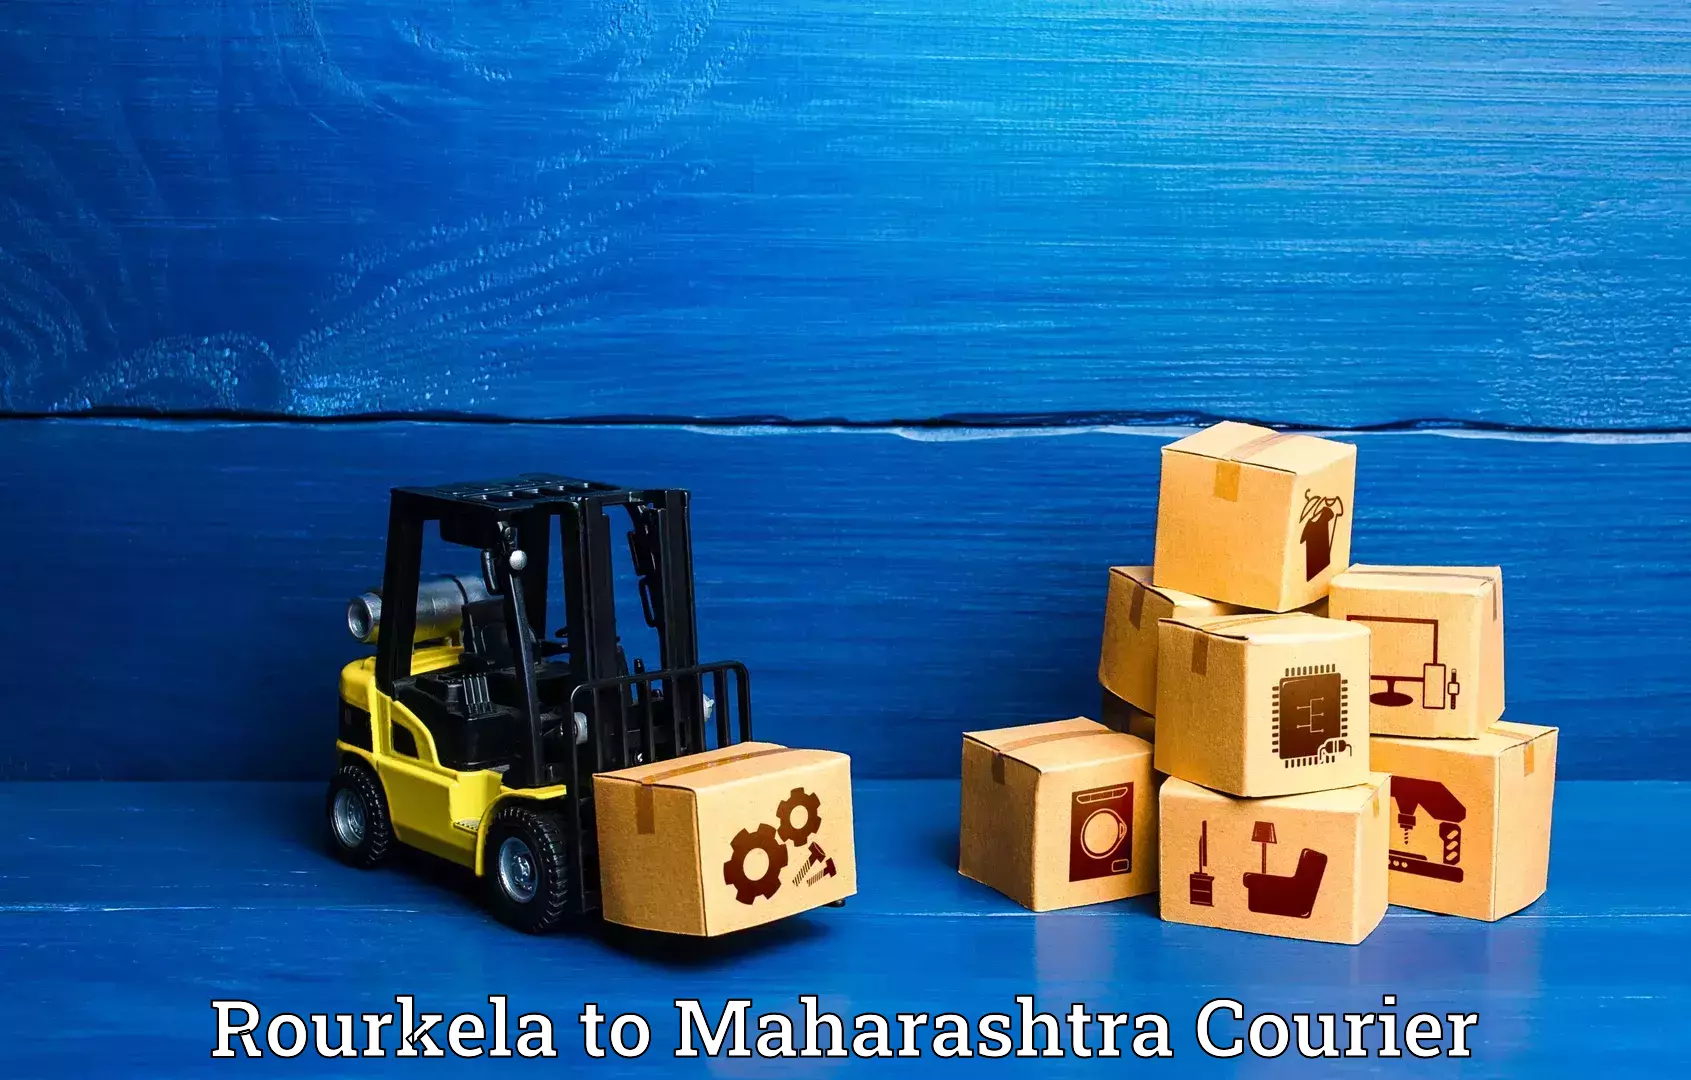 Luggage transport company Rourkela to Maharashtra